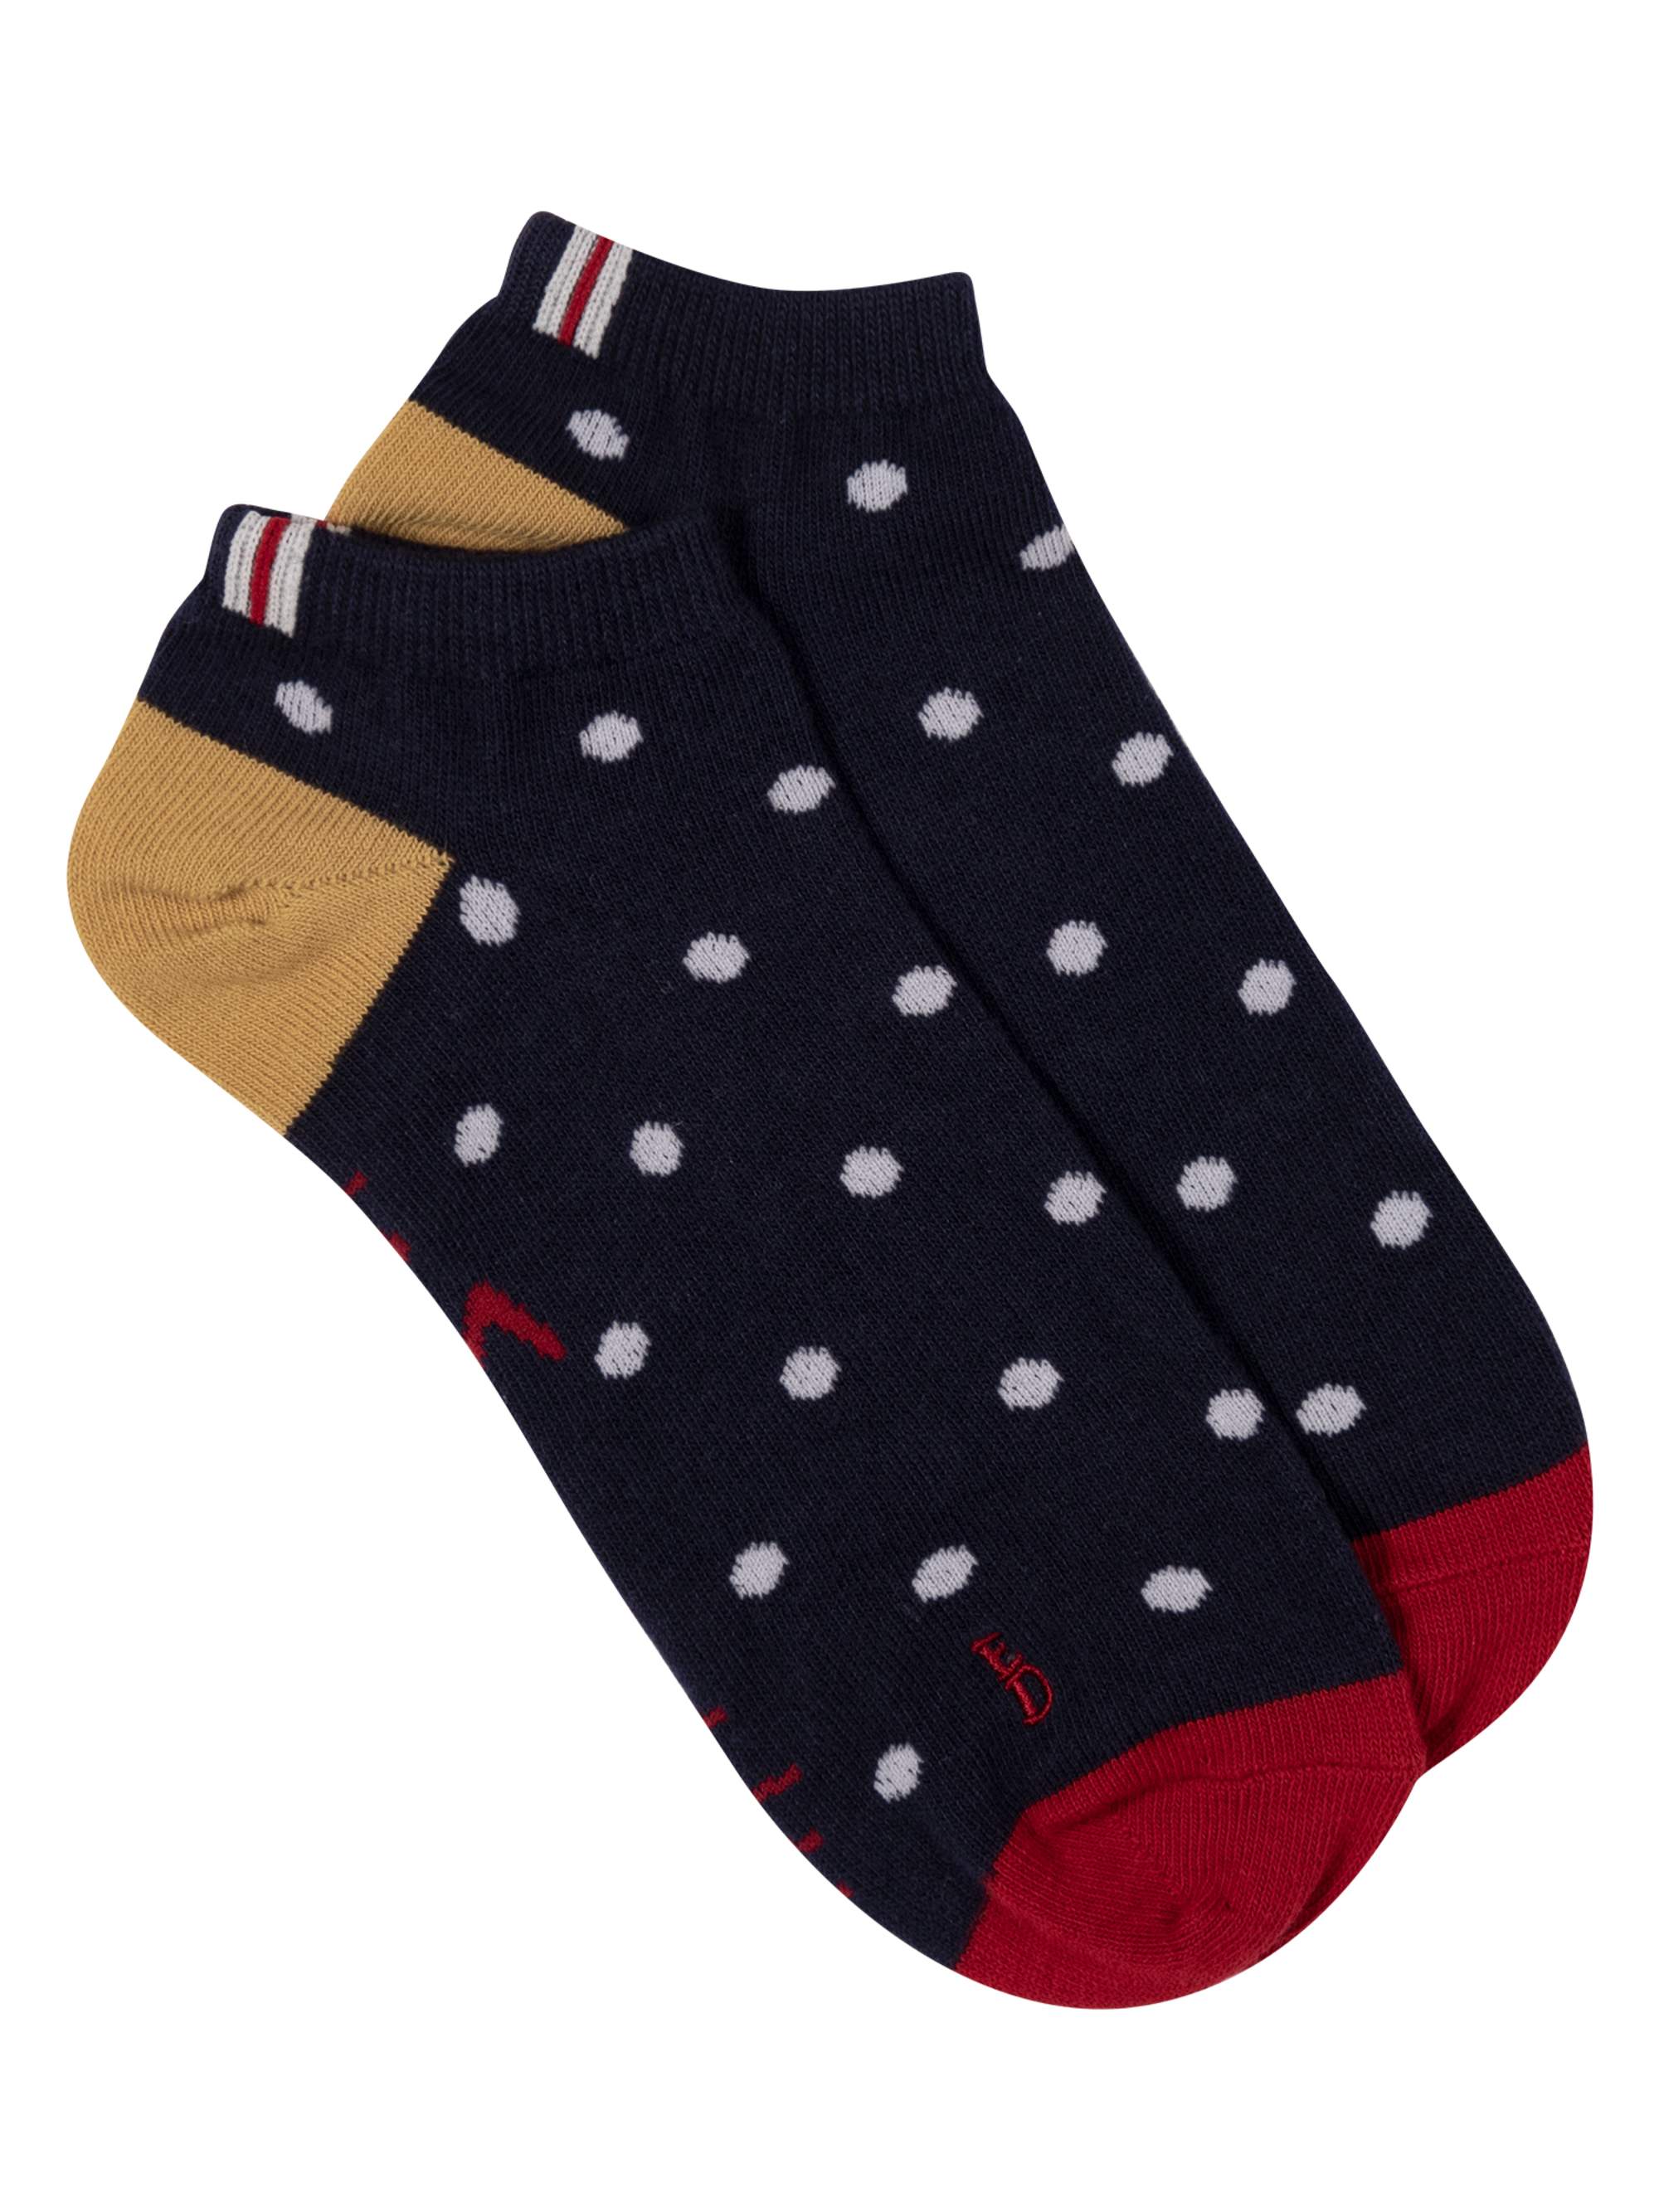 Women's Polka Dot Low Cut Socks - image 1 of 2